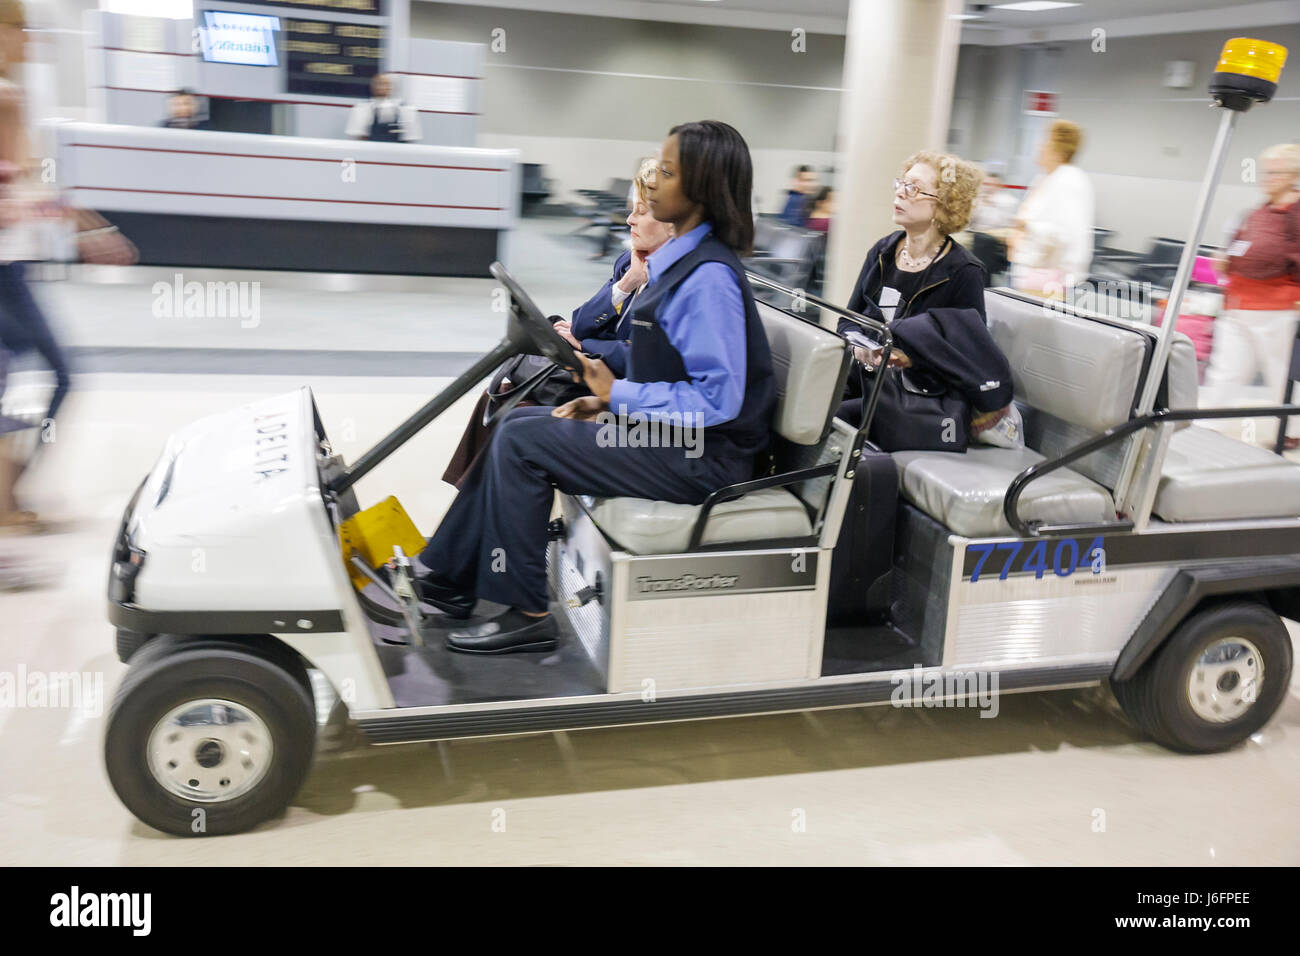 Atlanta Georgia, Hartsfield International Airport, femmes noires femmes, seniors citoyens, assistance, chariot de courtoisie, transport, conveniens Banque D'Images